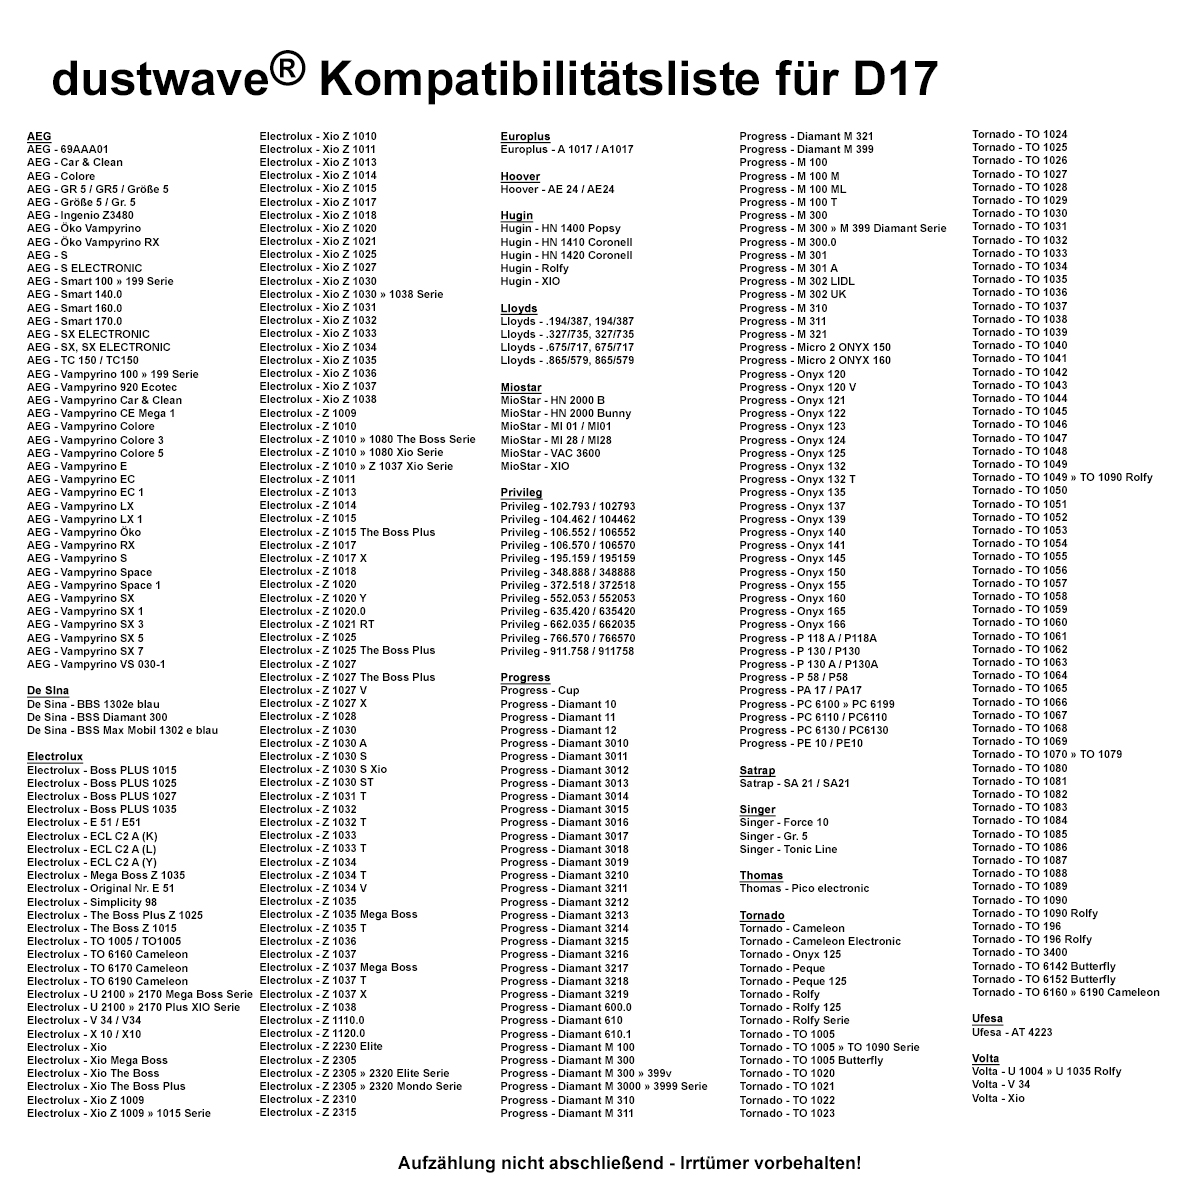 Dustwave® Premium 20 Staubsaugerbeutel für AEG Smart 160.0 - hocheffizient mit Hygieneverschluss - Made in Germany